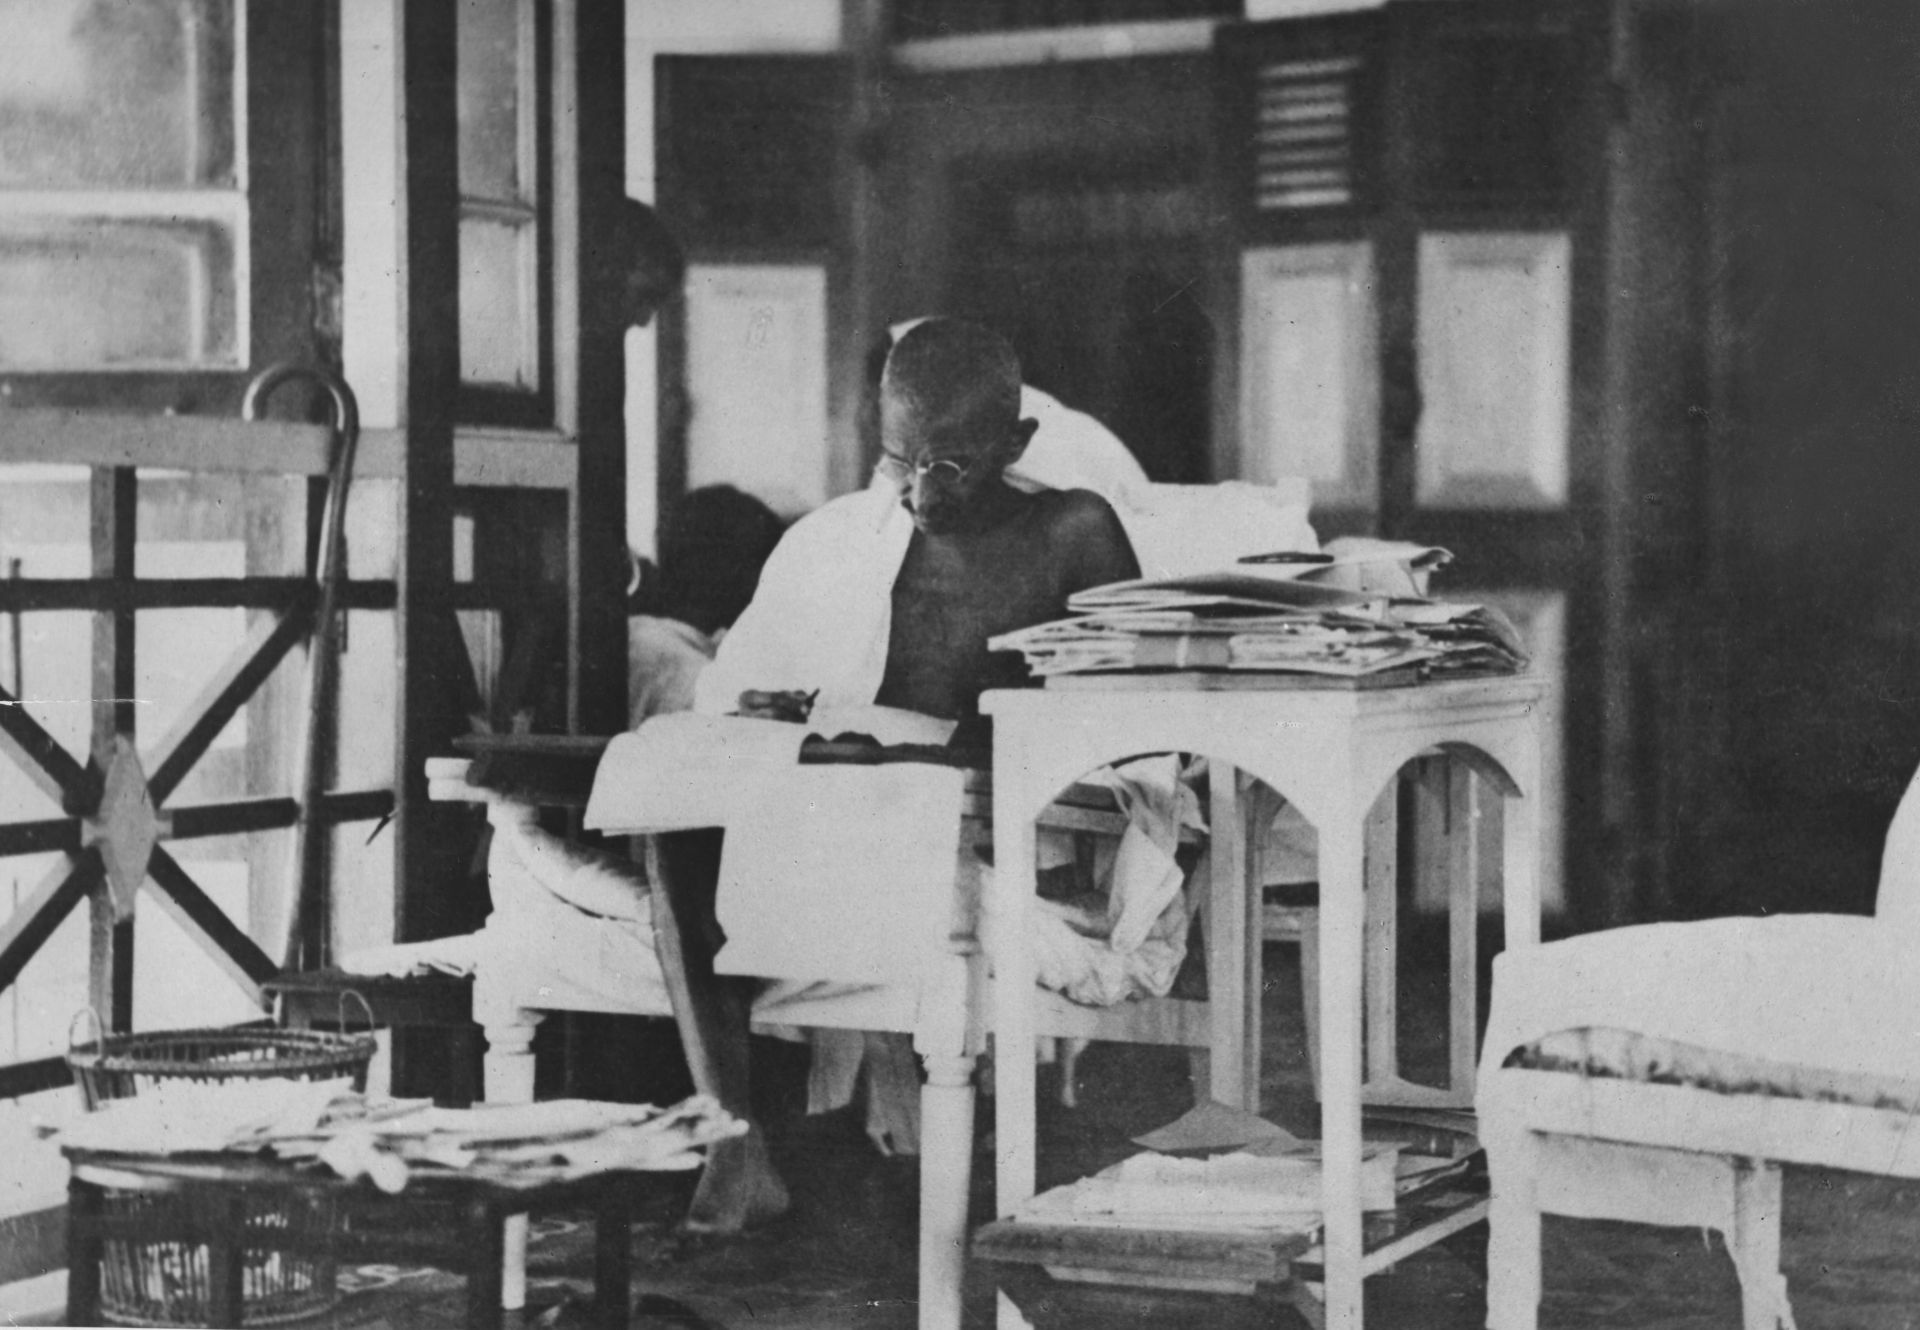  20 май 1924 г.: Махатма Ганди чете кореспонденцията си, до момента в който живее насаме след освобождението му от пандиза 